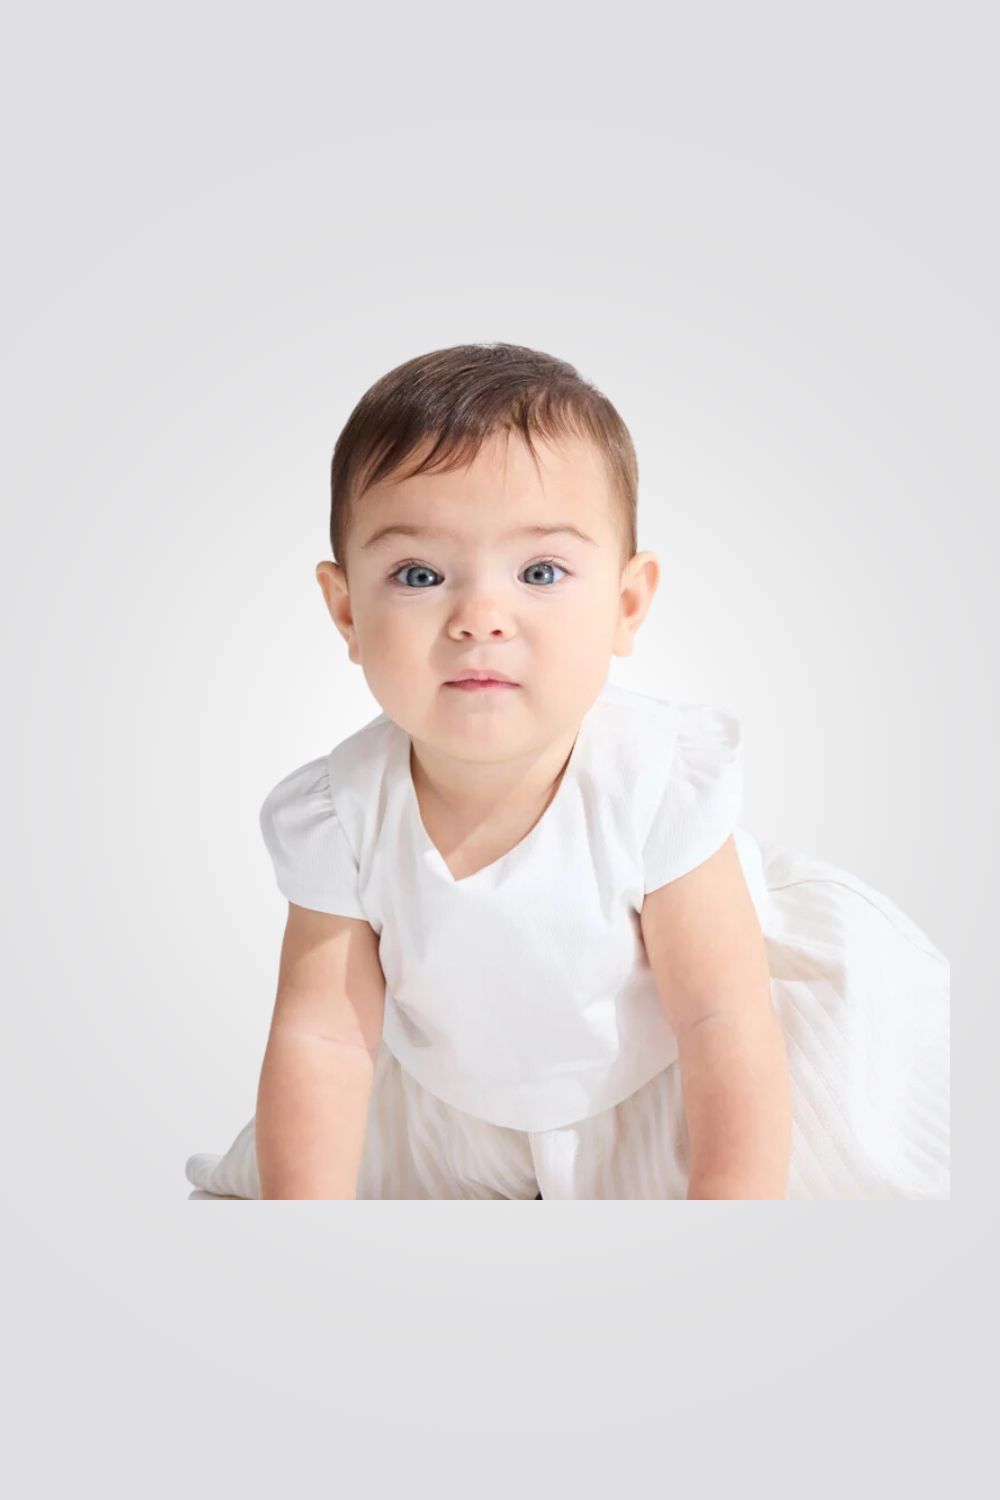 שמלה לתינוקות בצבע לבן וזהב